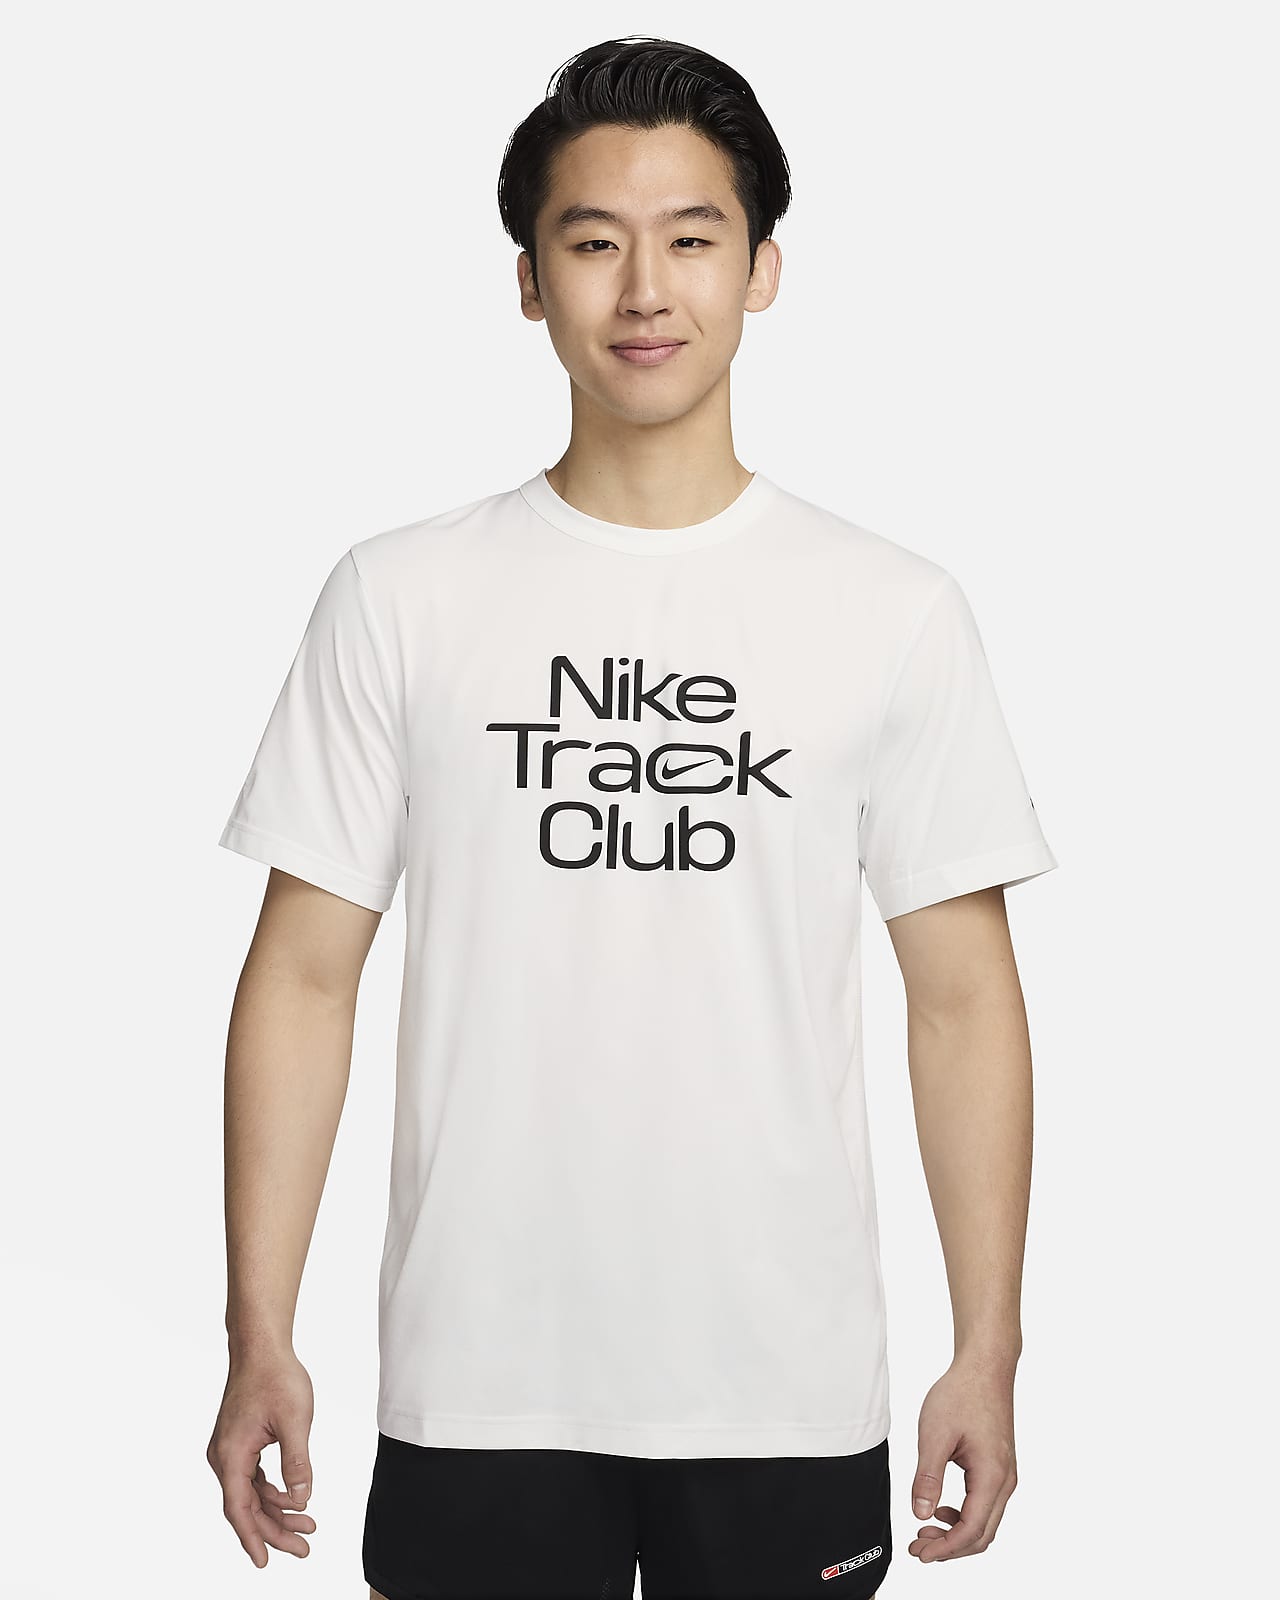 เสื้อวิ่งแขนสั้นผู้ชาย Dri-FIT Nike Track Club